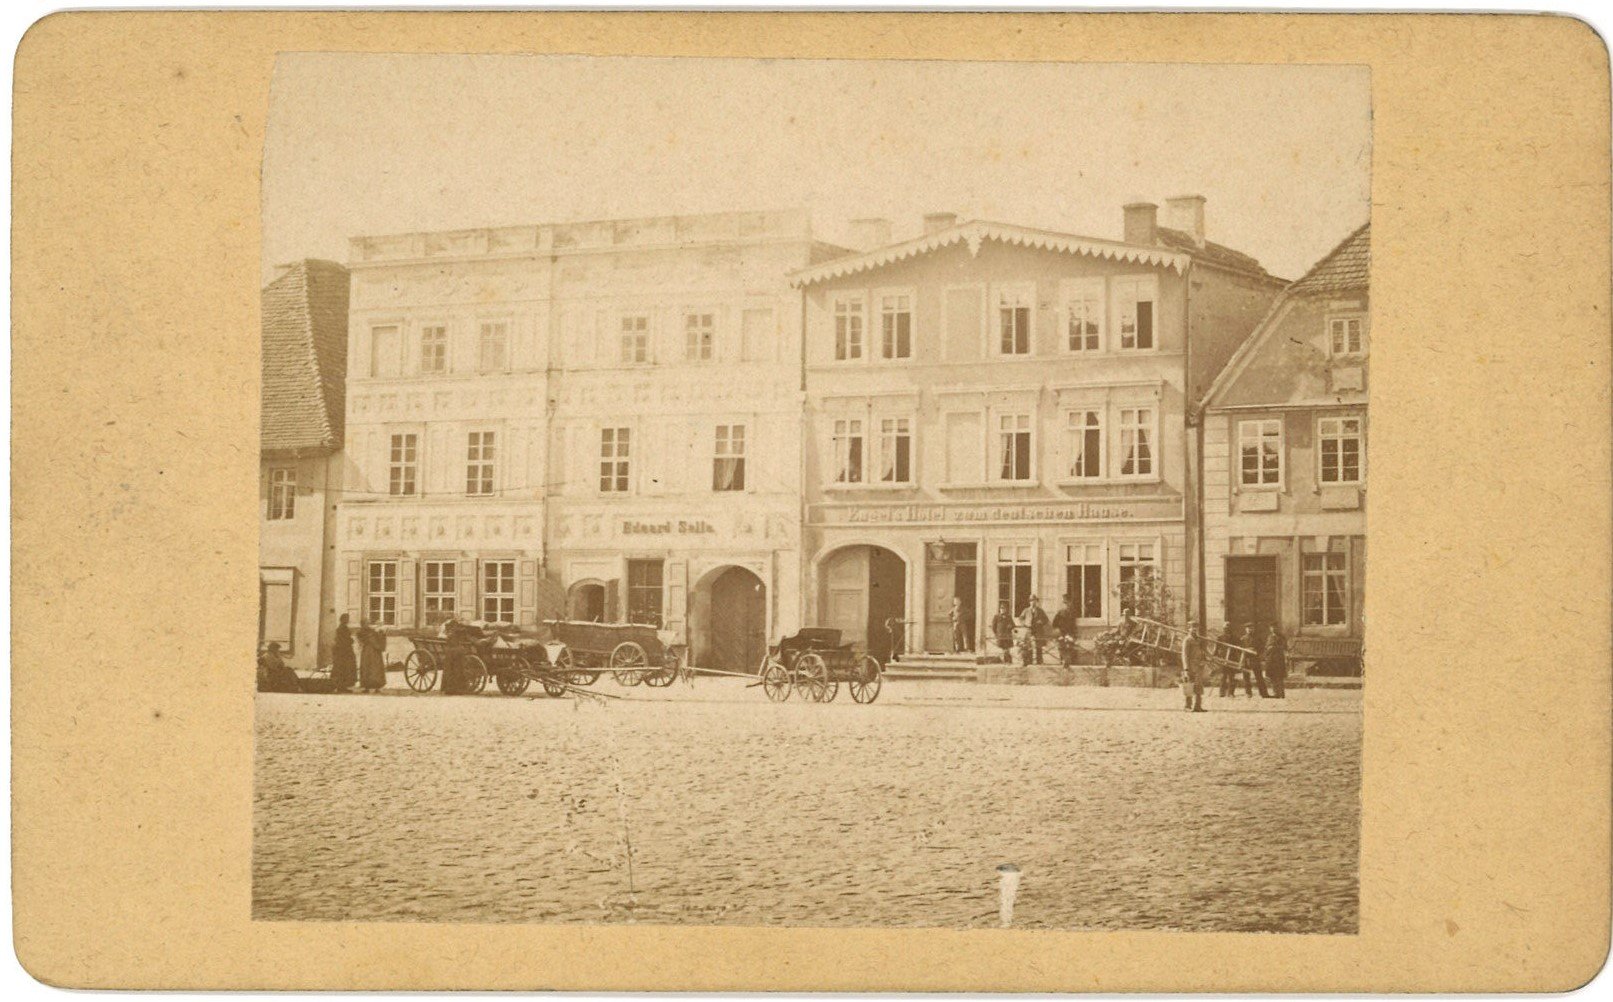 Königsberg/Neumark / Chojna: Häuser am Markt (Südseite) (Landesgeschichtliche Vereinigung für die Mark Brandenburg e.V., Archiv CC BY)